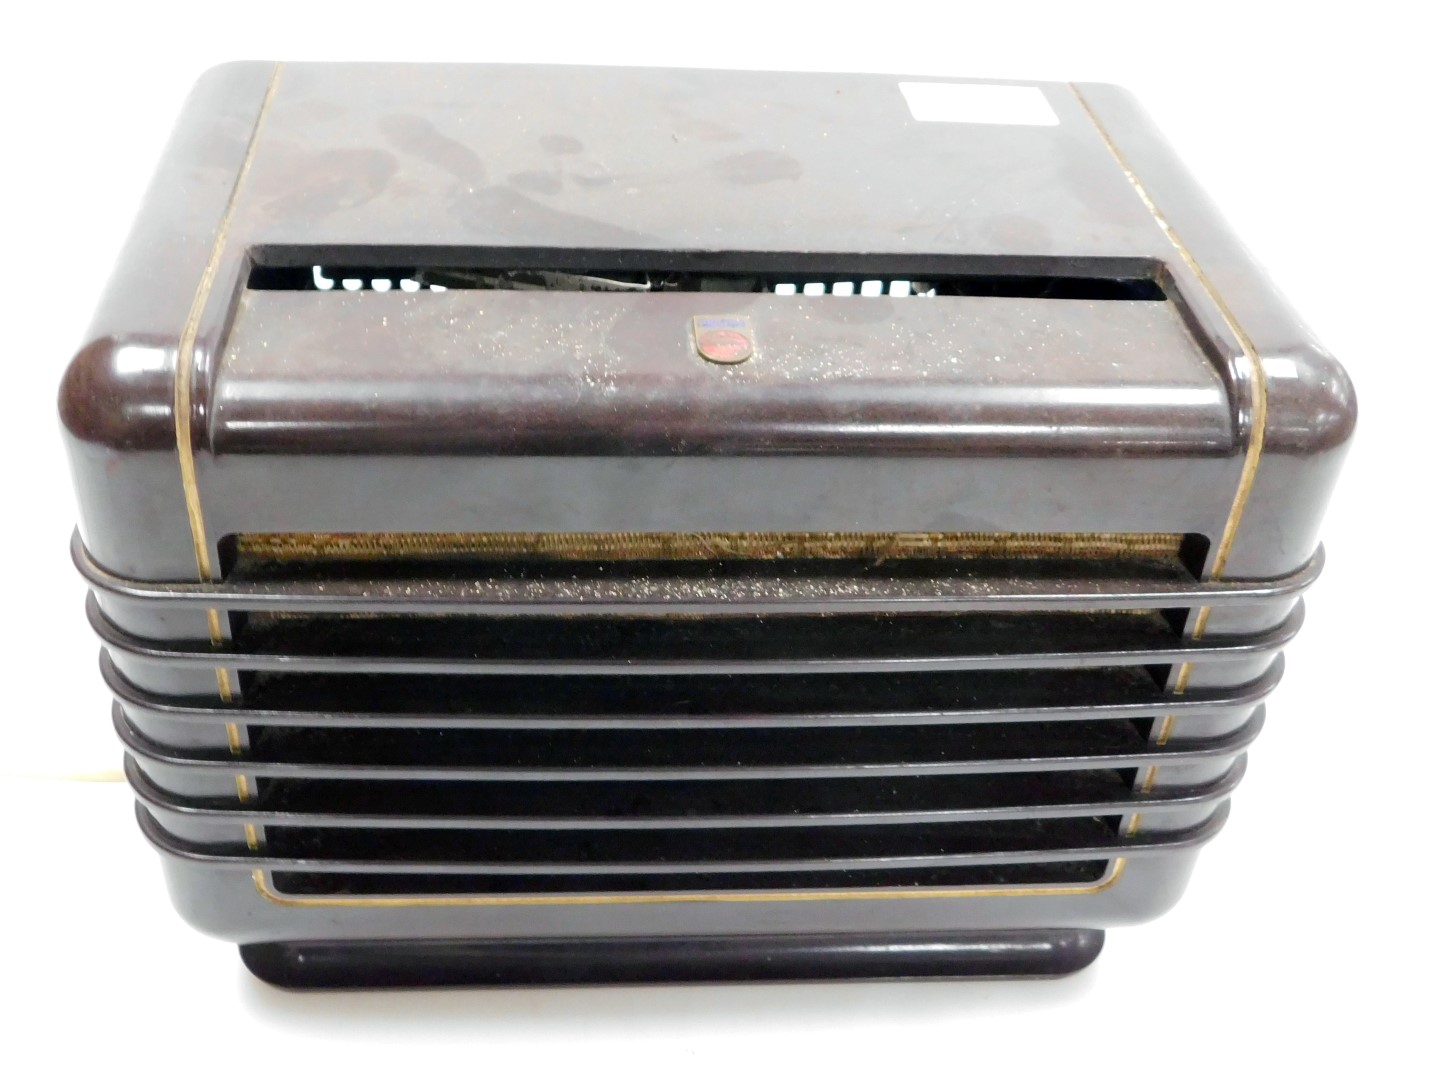 A Phillips bakelite case radio, type 209U-15, serial number M15654, 28cm wide.